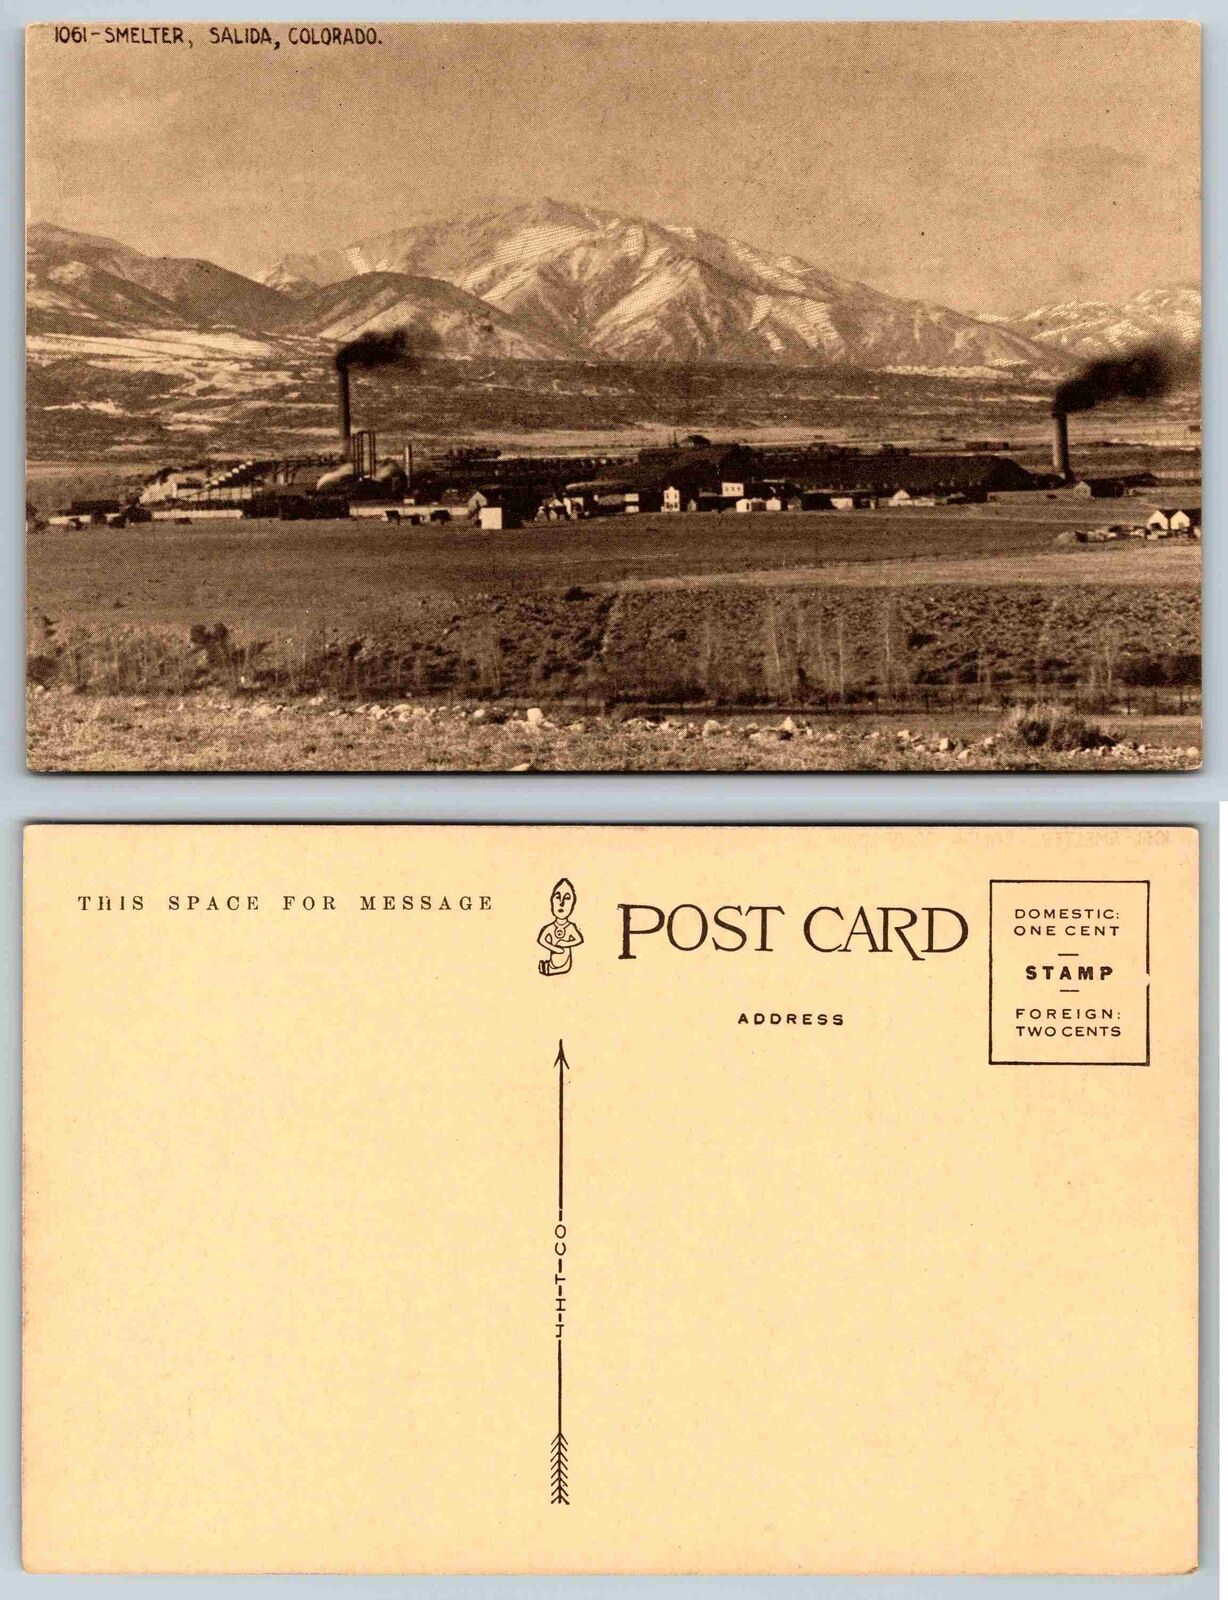 Vintage Postcard - Smelter Salida, Colorado